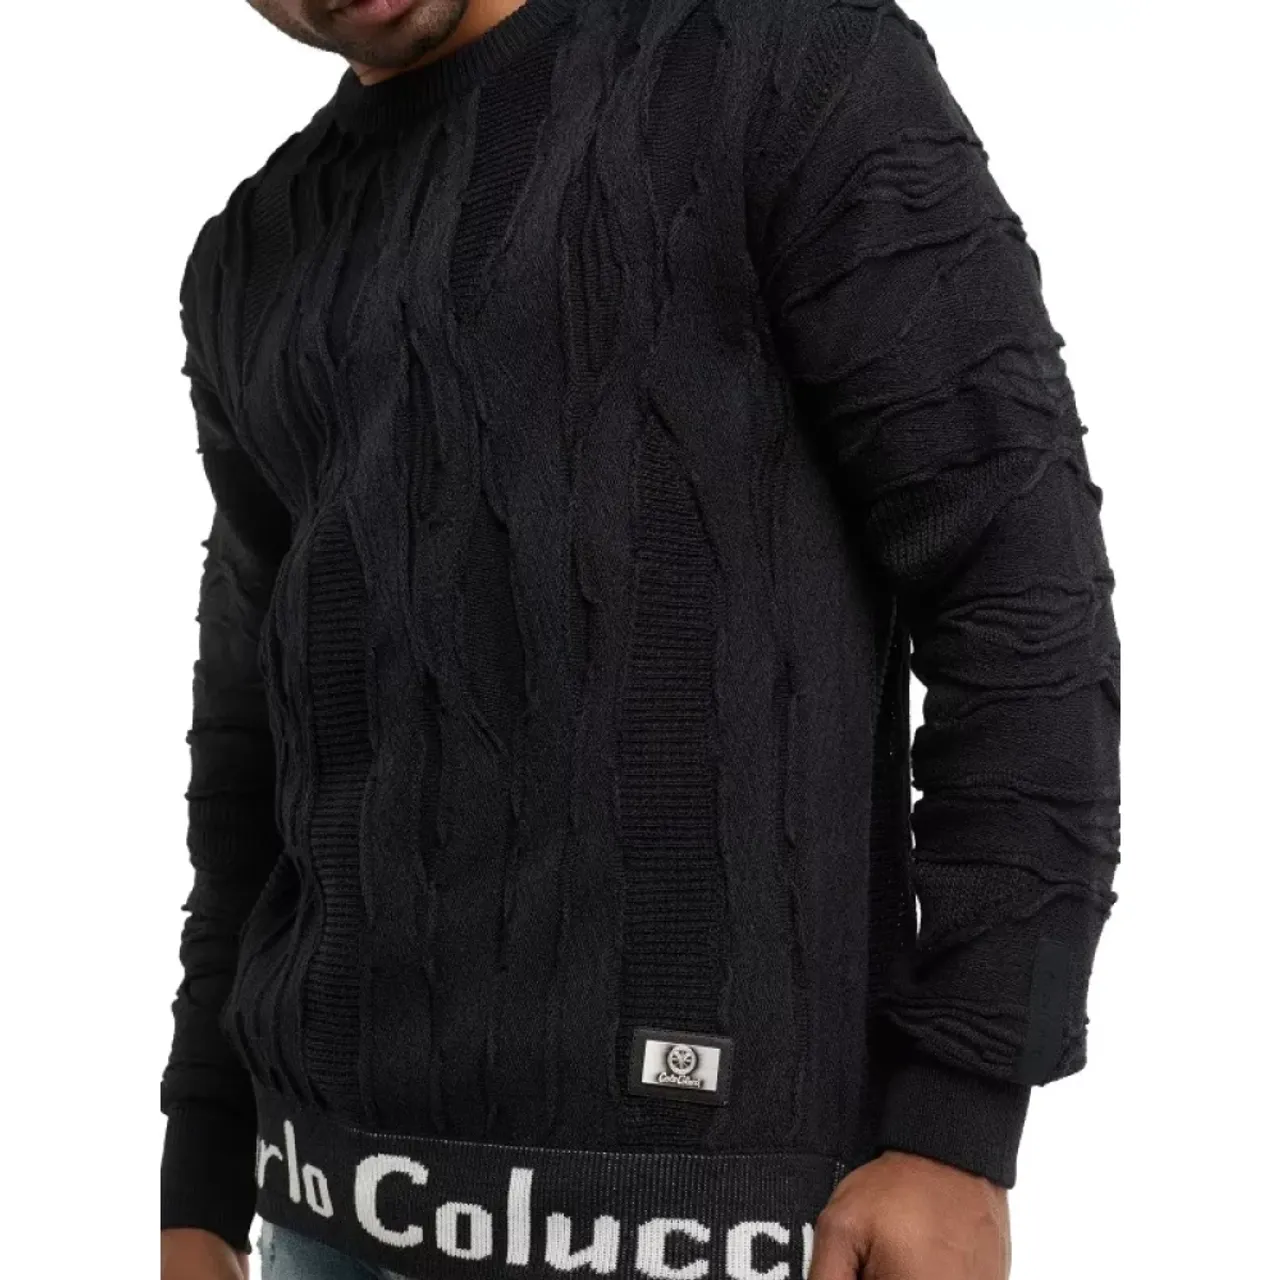 Schwarzer Pullover mit Stil C11706 Carlo Colucci